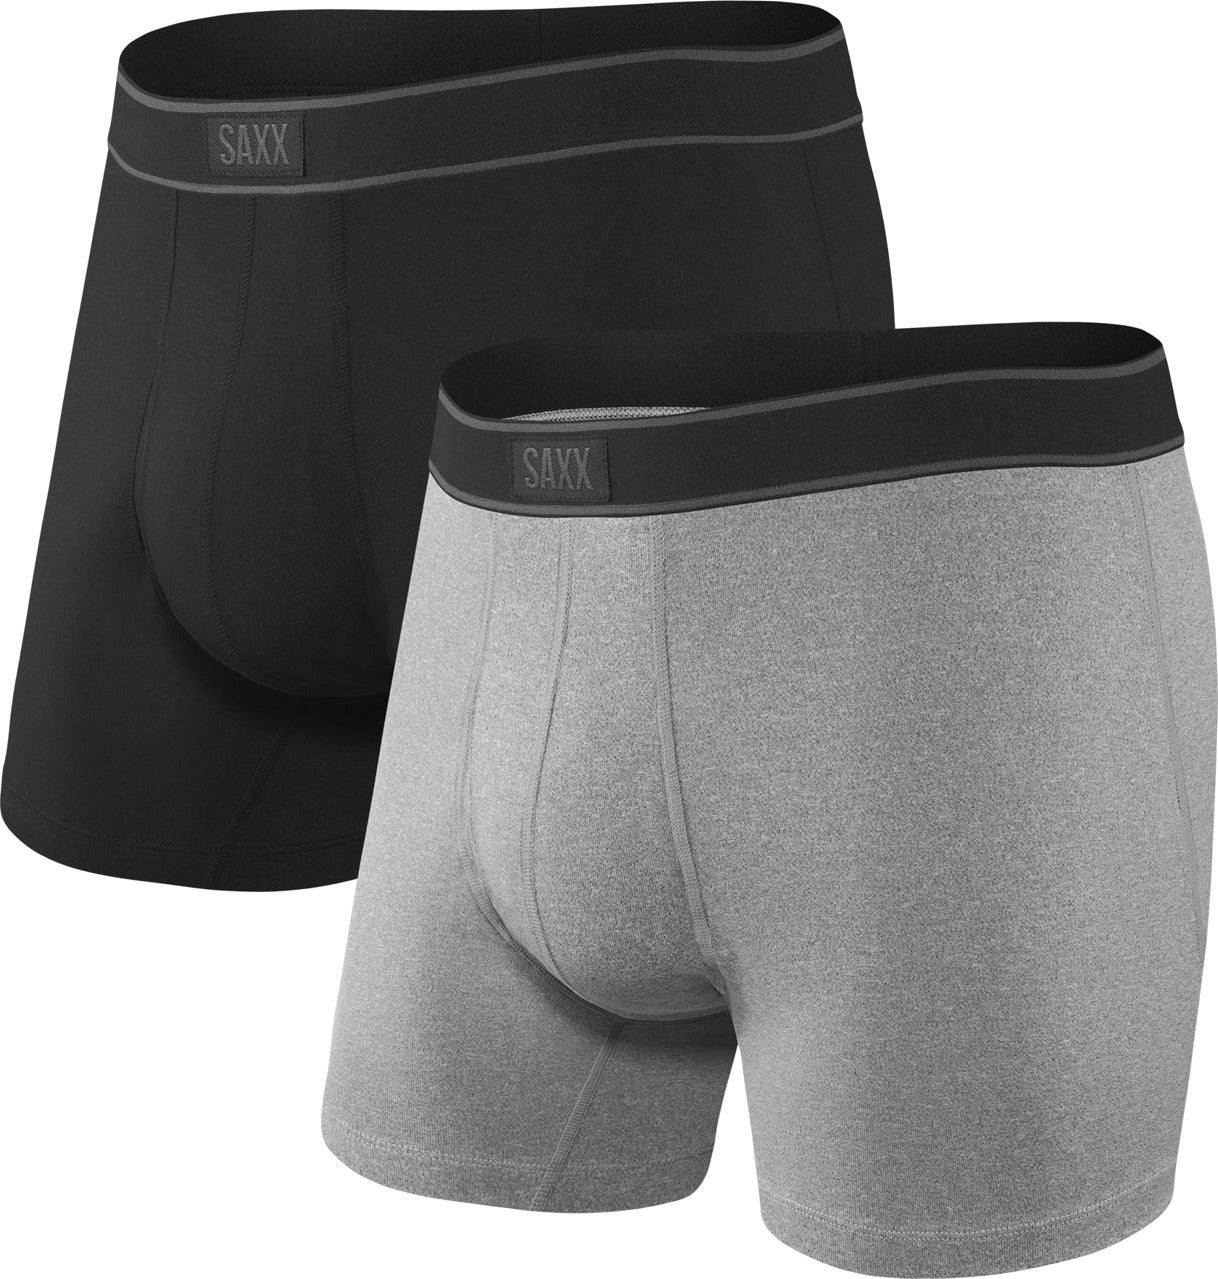 Calvin Klein White Boxer Brief Underwear 2 Pack Men's New in